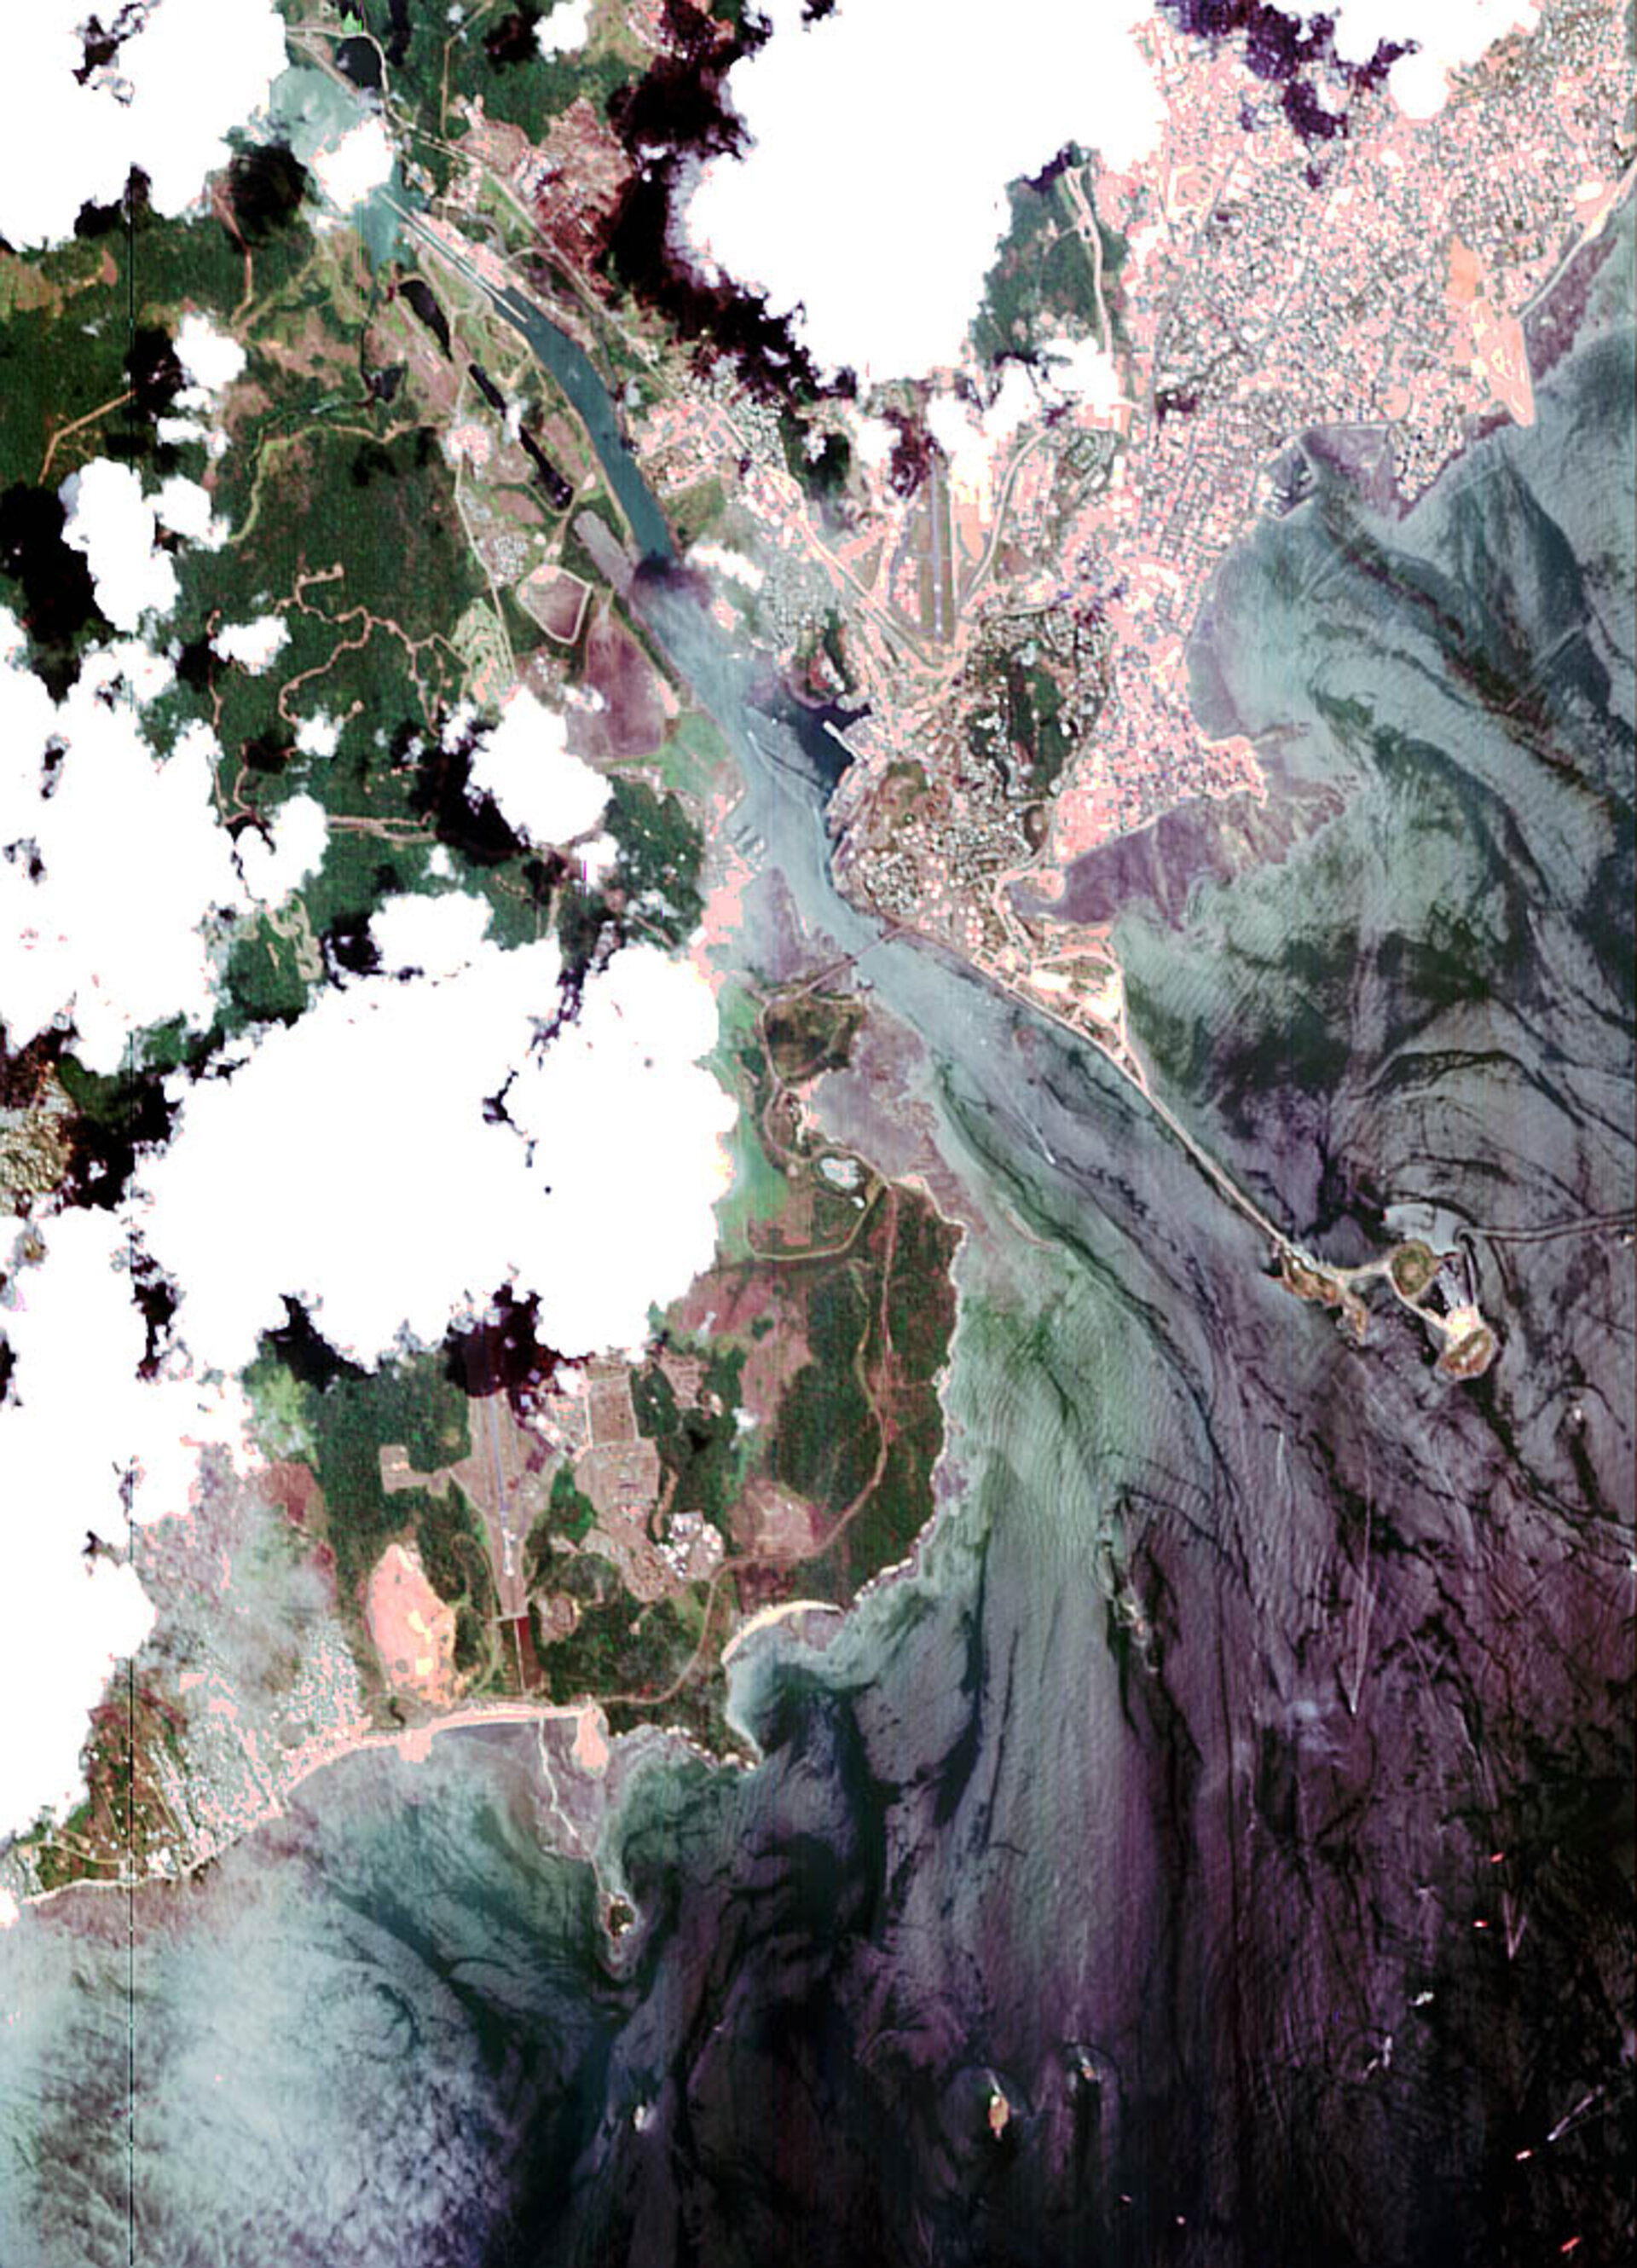 Panama Canal, Panama - CHRIS images - 13 April 2002